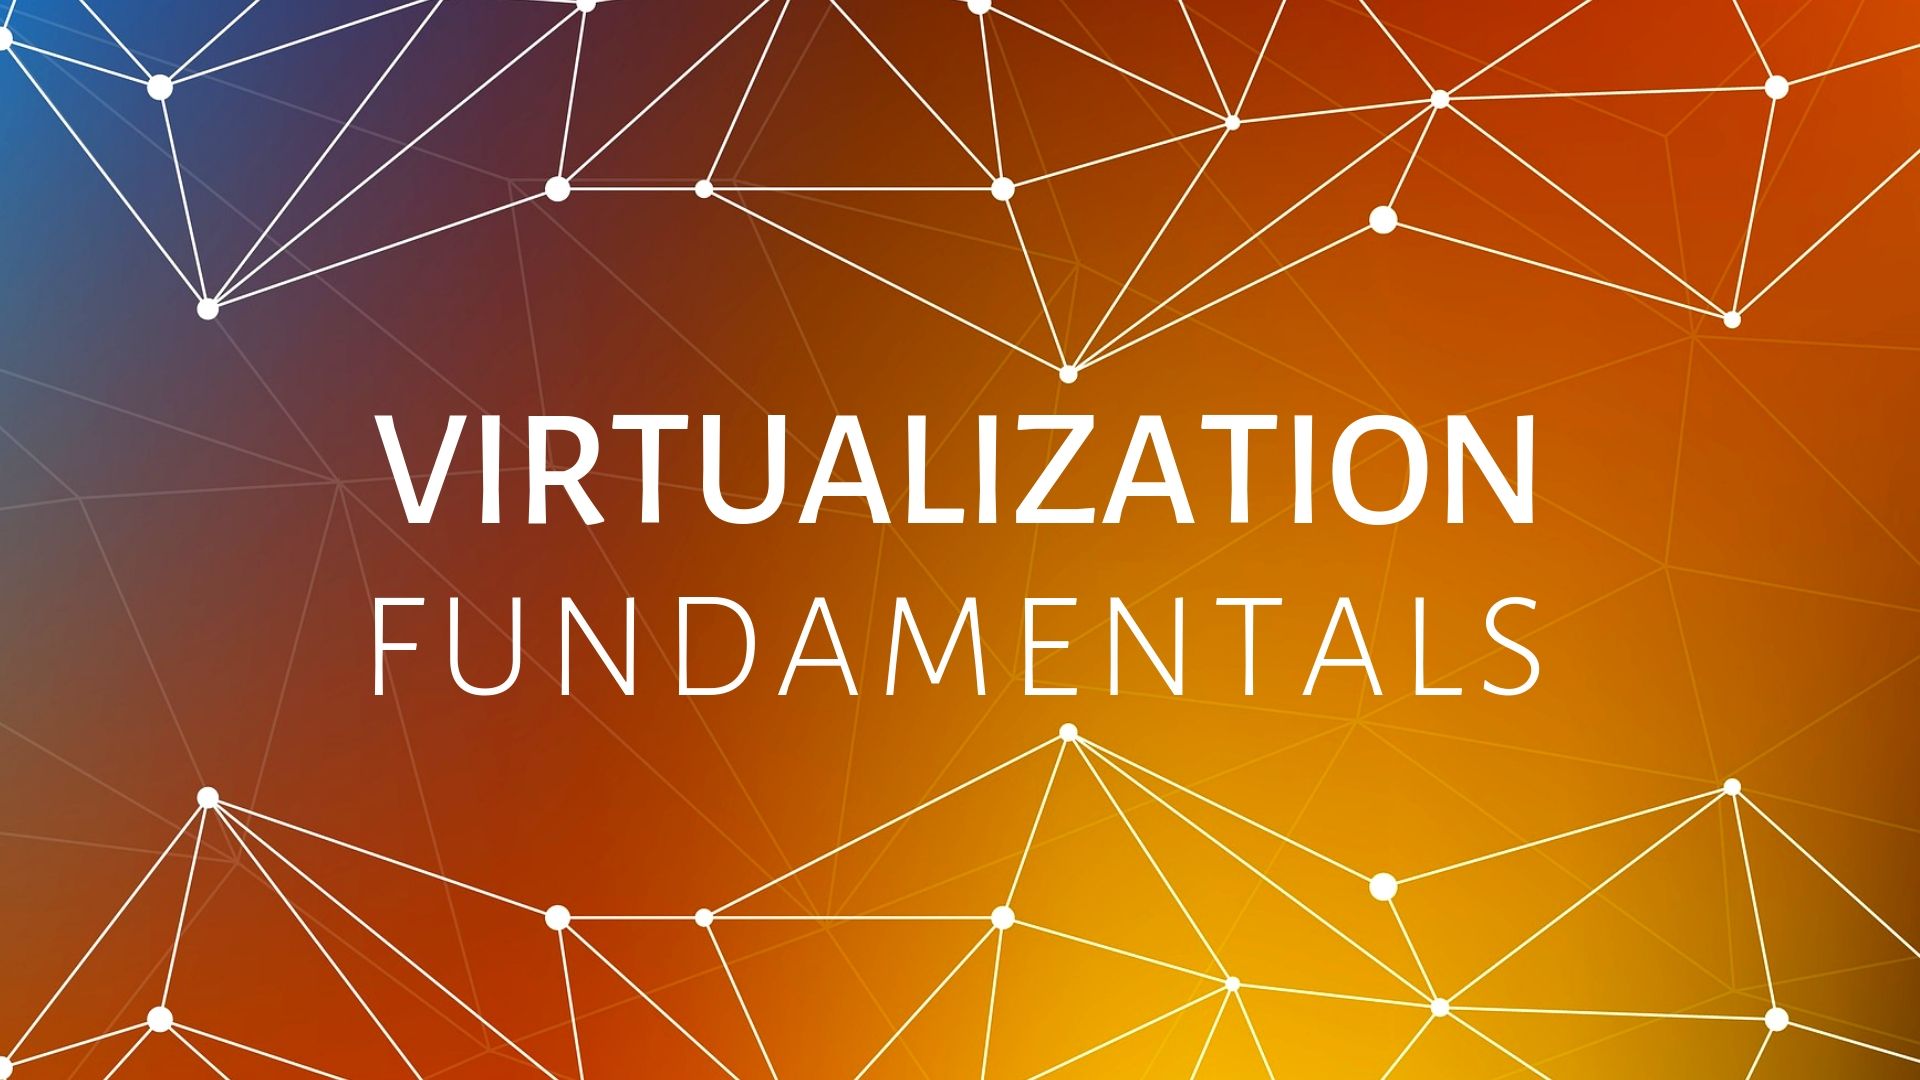 Virtualization Fundamentals VirtualizationFundamentals